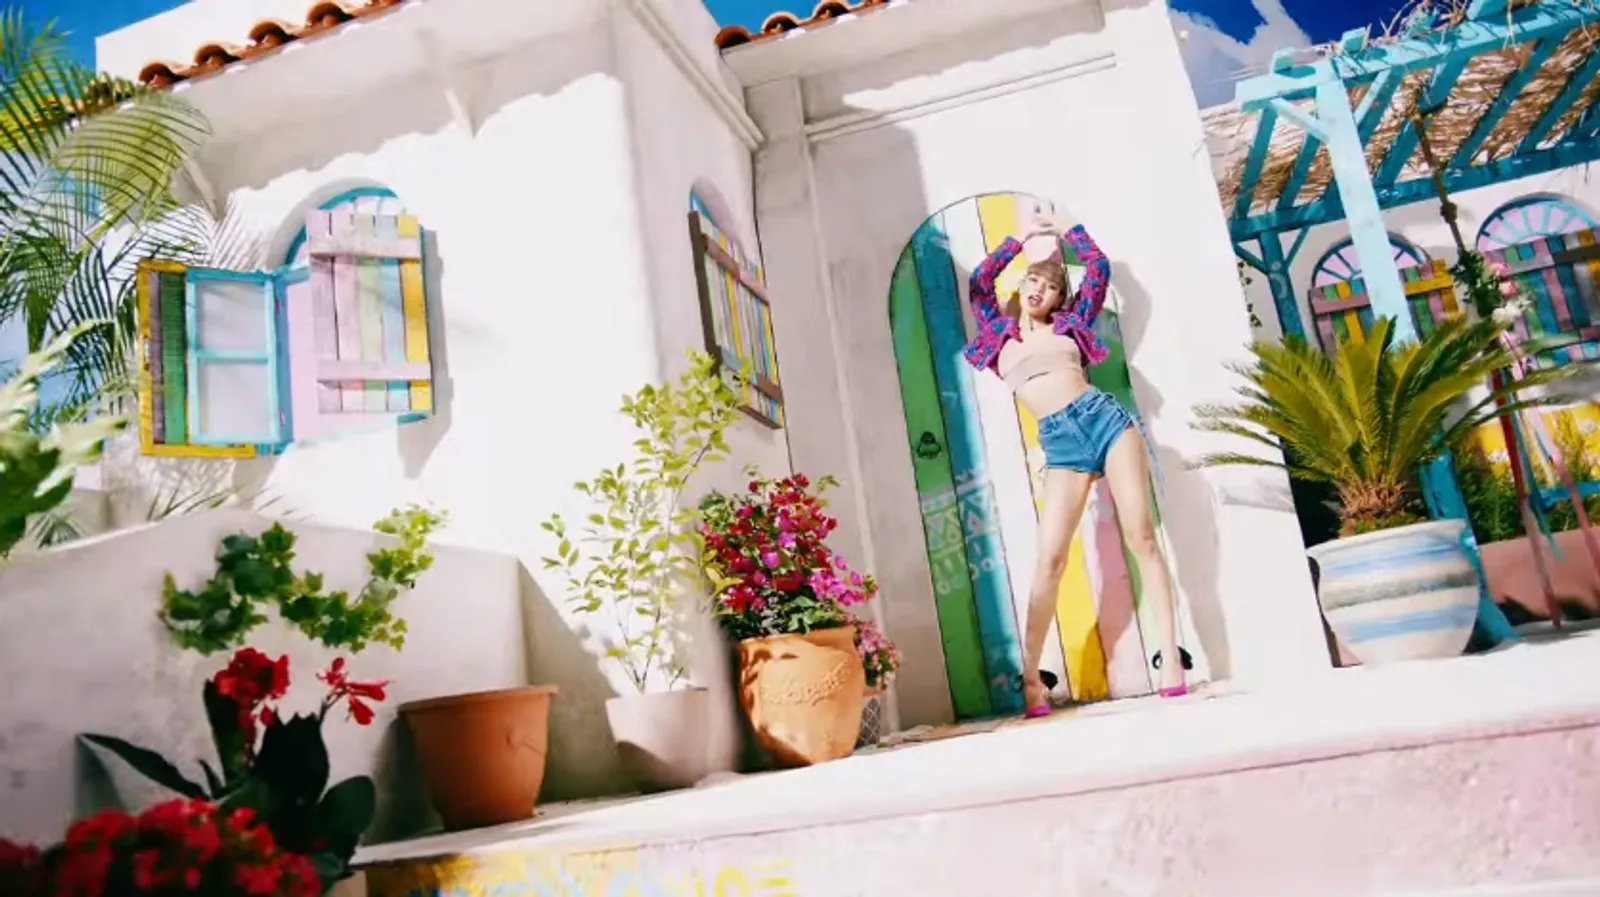 Ini 7 Fakta Menarik MV Debut Solo Lisa BLACKPINK, "LALISA"